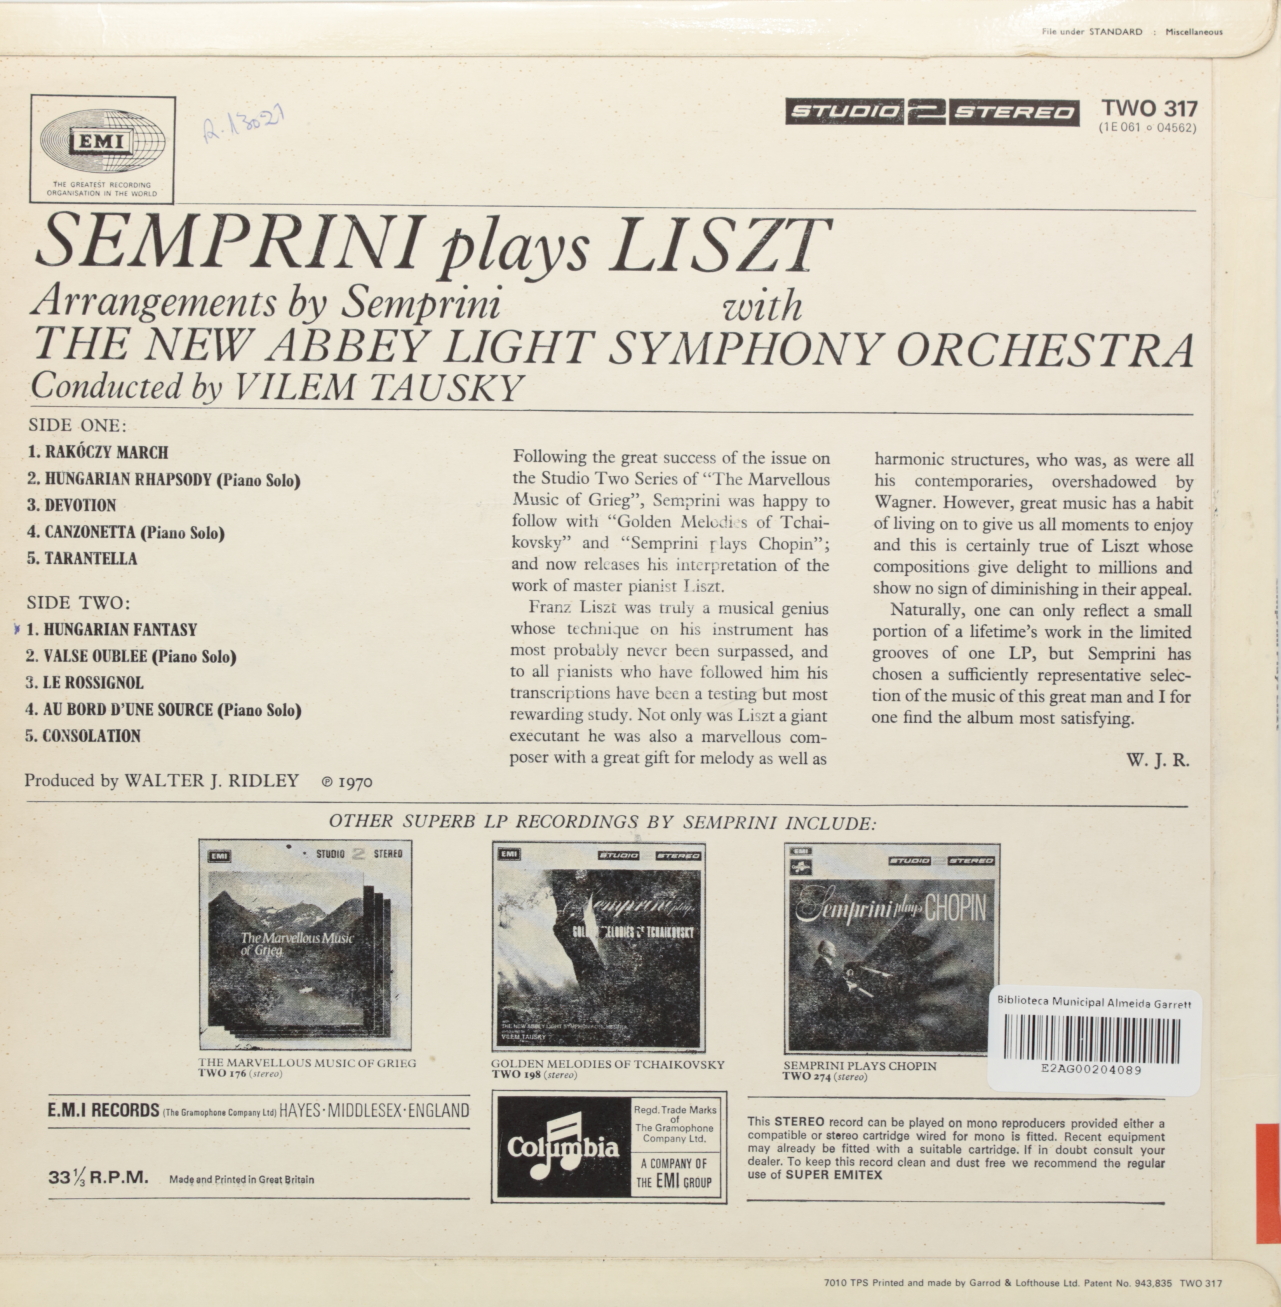 Semprini plays Liszt